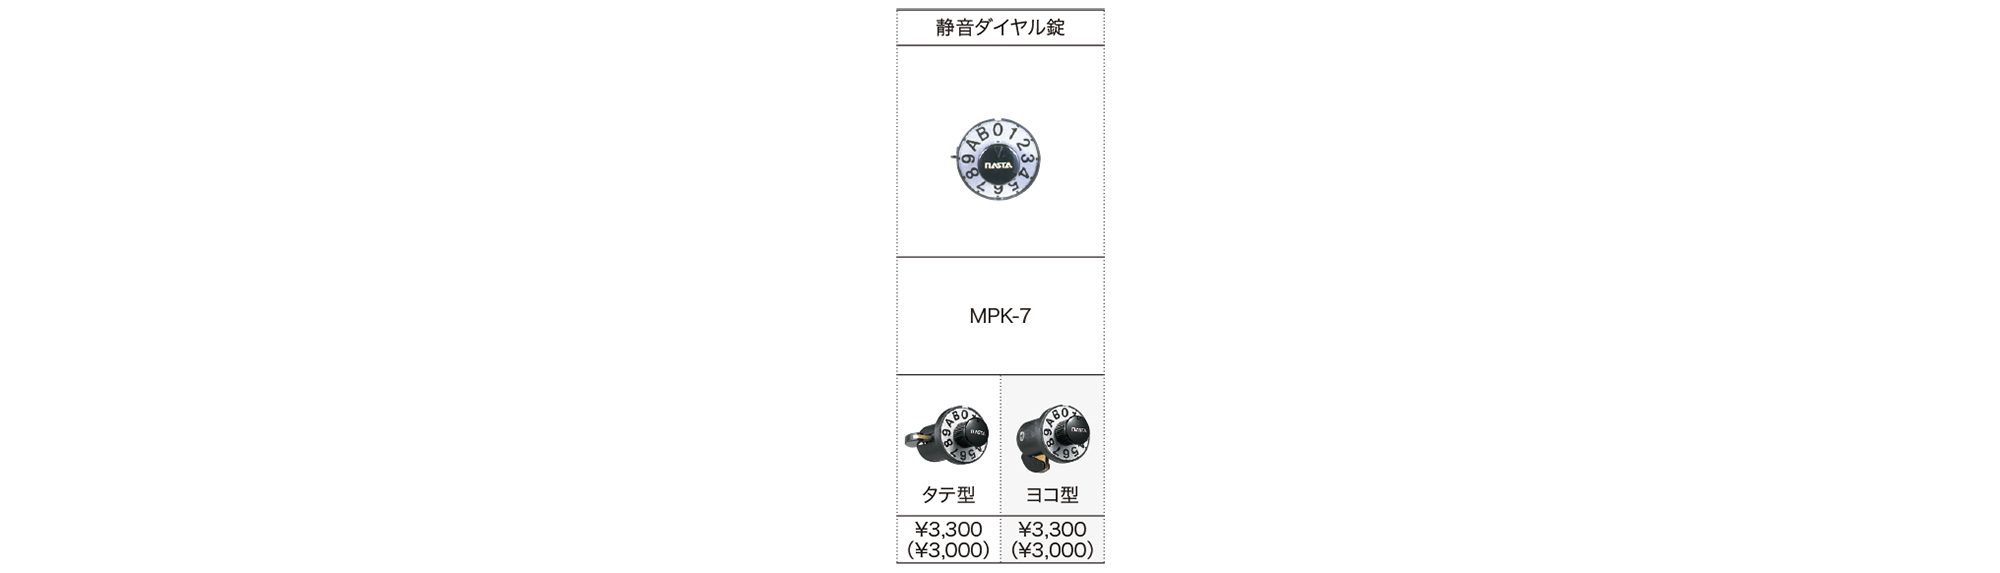 静音ダイヤル錠 MPK-7 | ポスト | 製品情報 | 株式会社ナスタ